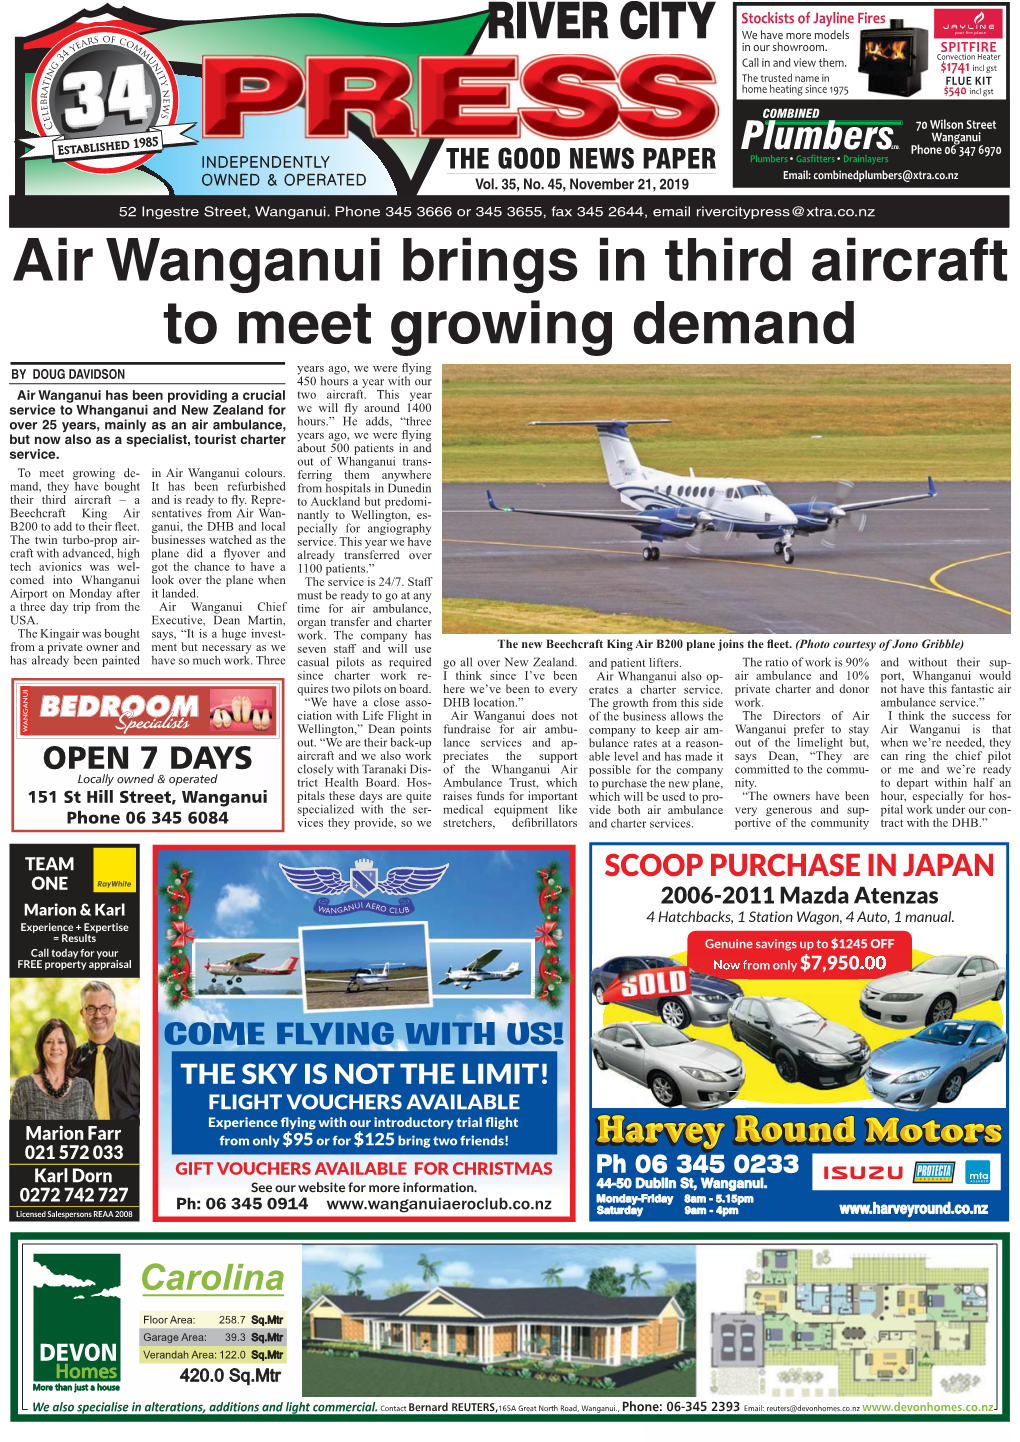 Air Wanganui Brings in Third Aircraft to Meet Growing Demand